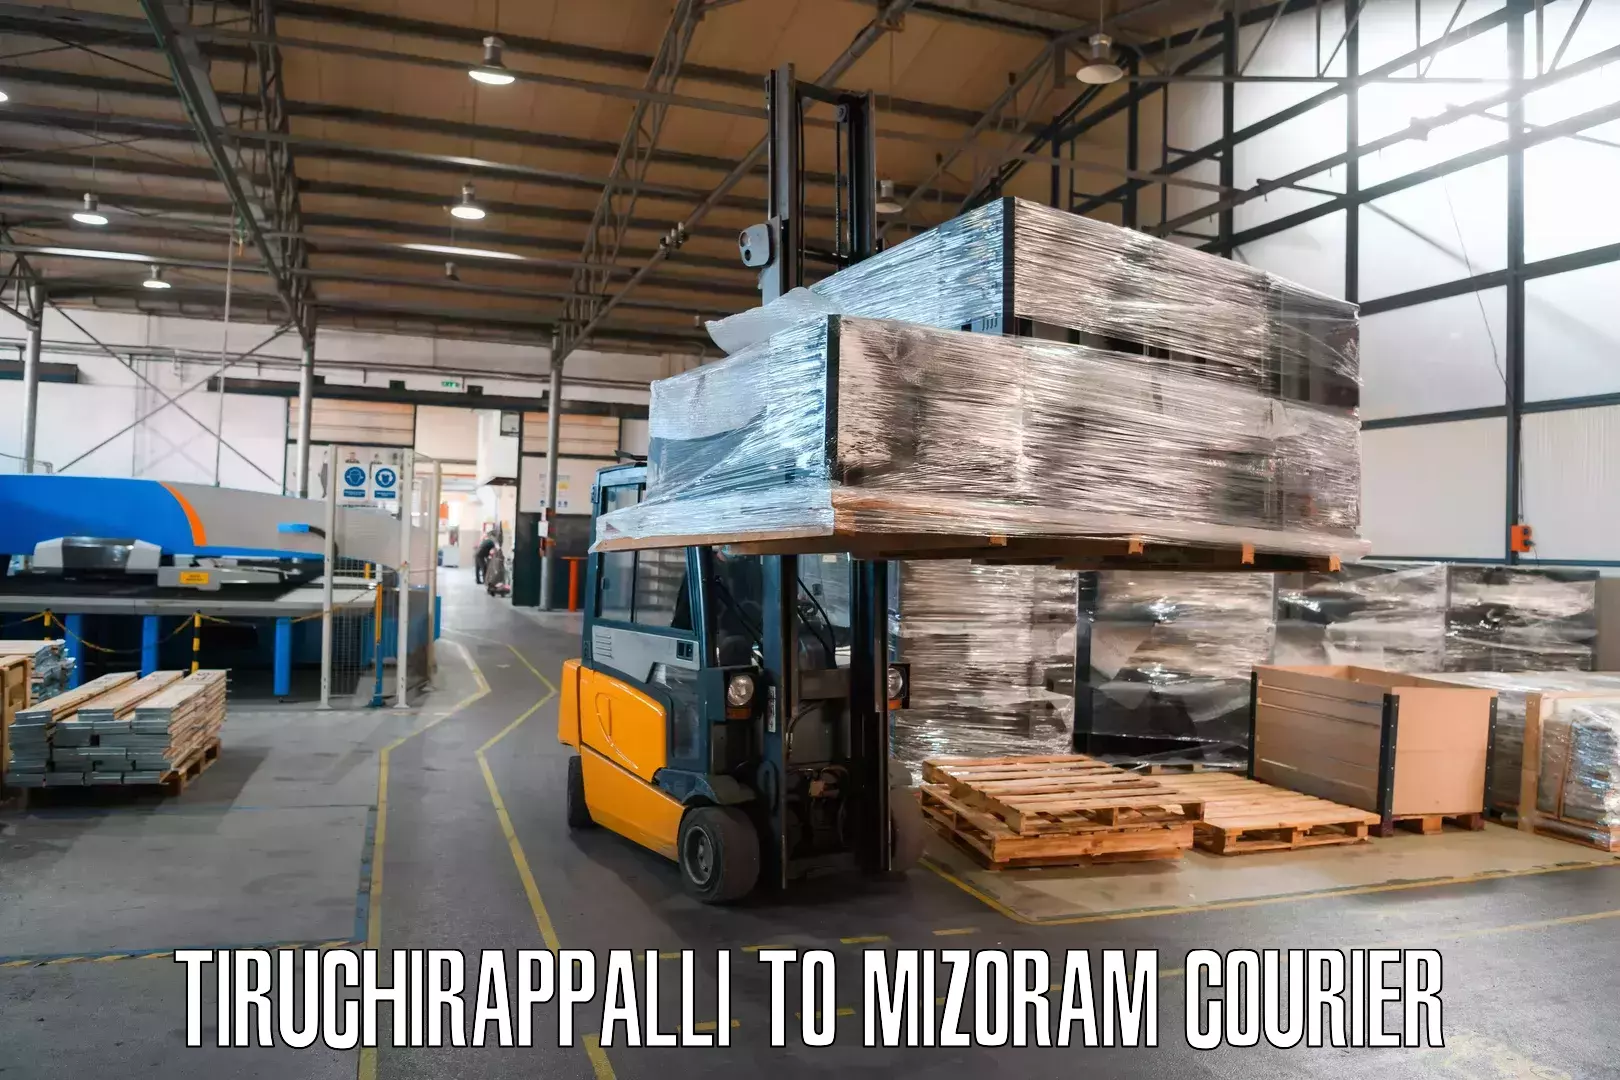 Courier service efficiency Tiruchirappalli to Mizoram